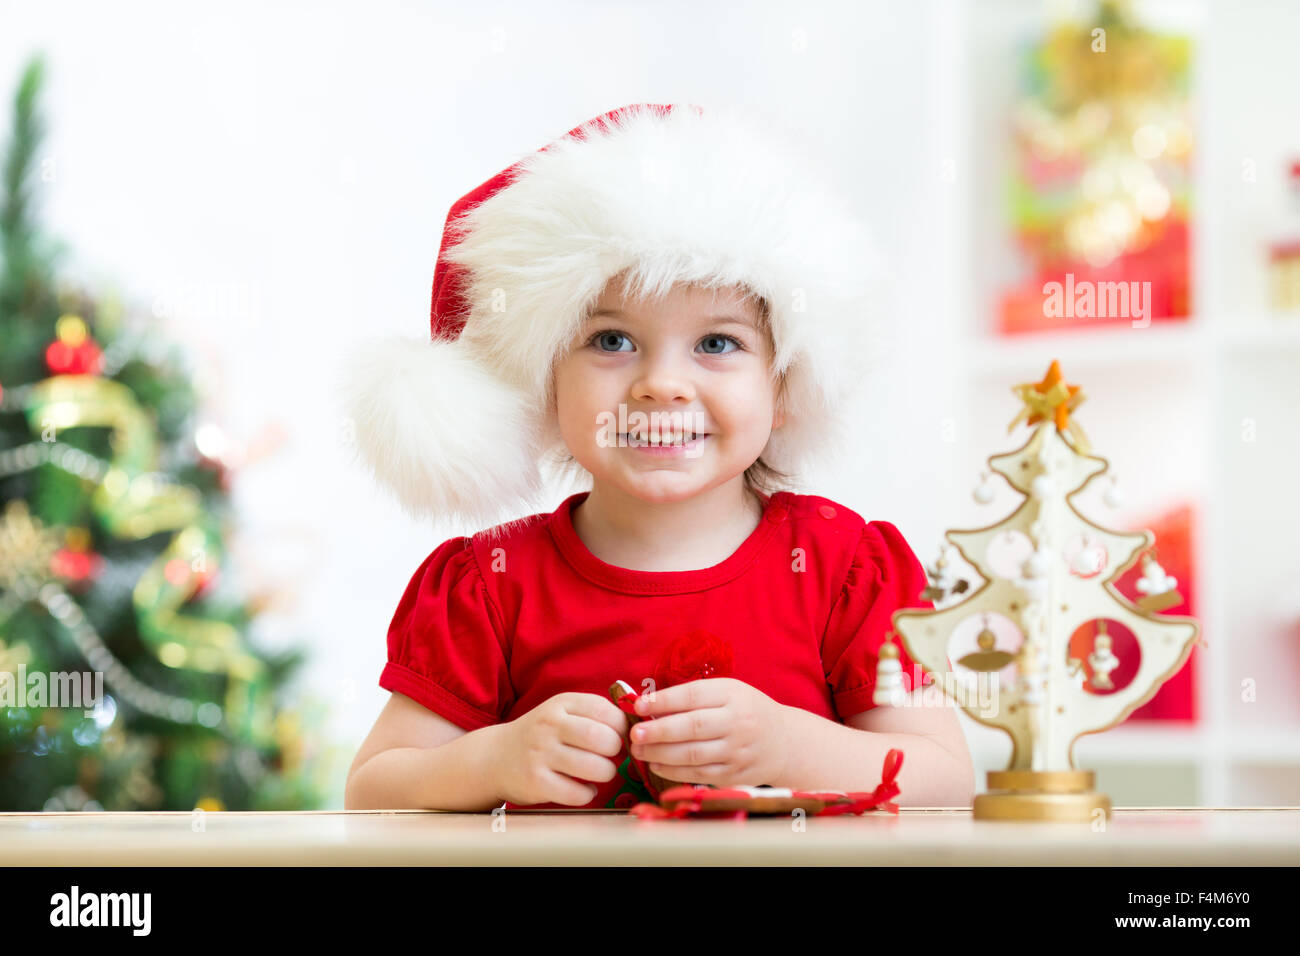 Pequeña niña vistiendo un gorro de Papá Noel rojo festivo con galletas de Navidad Foto de stock